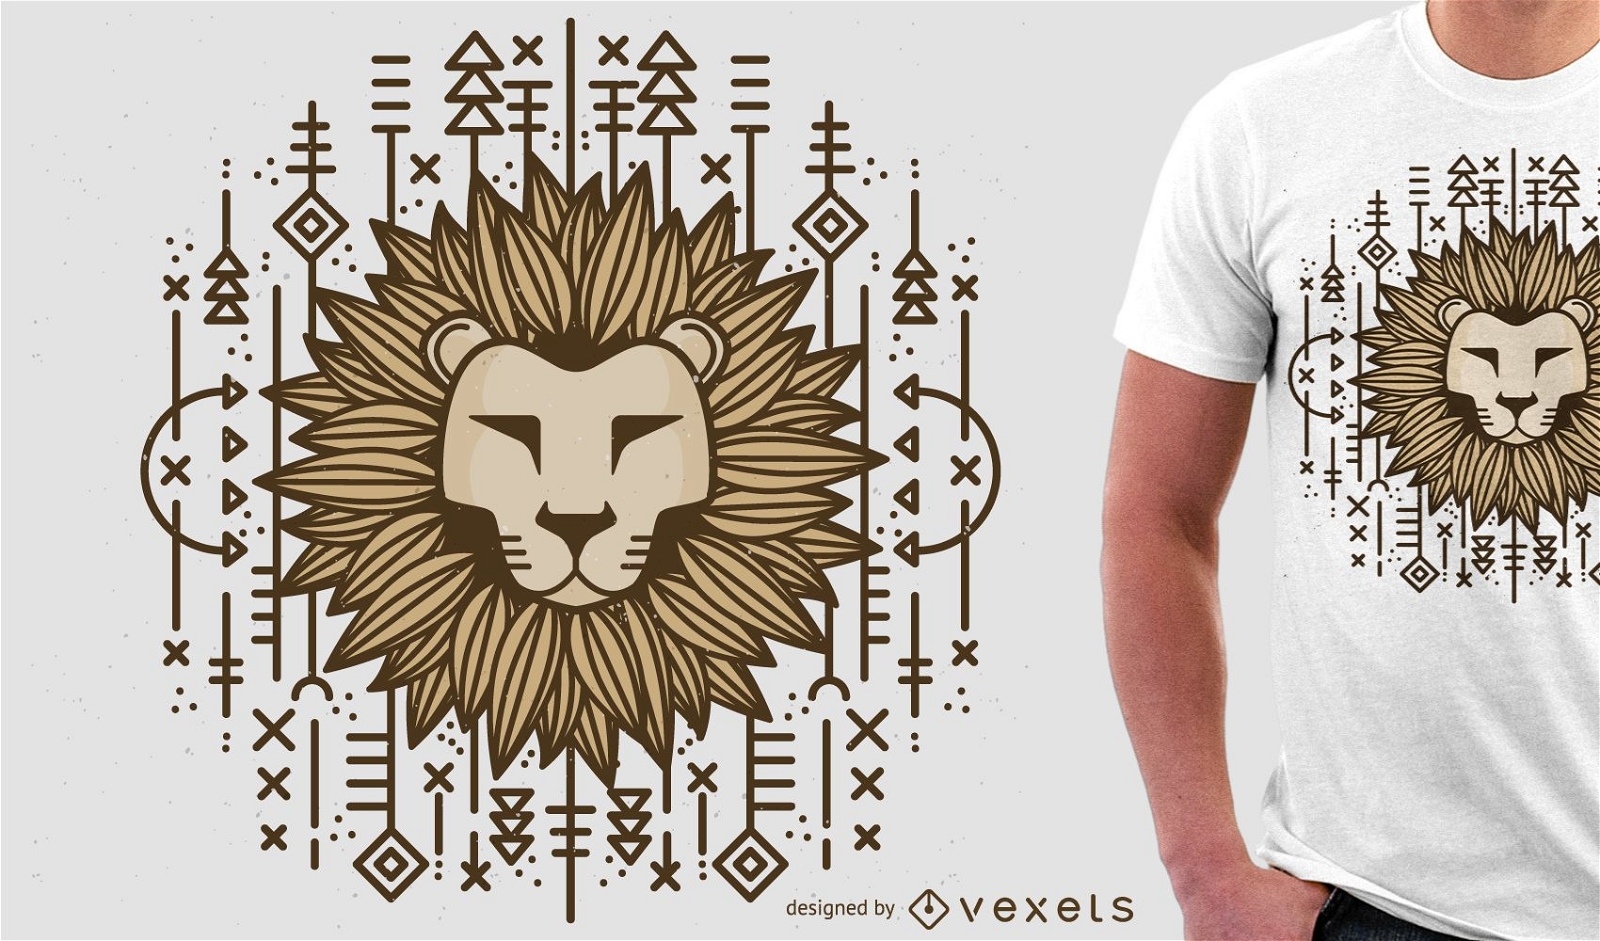 Löwenillustration für T-Shirt Ware